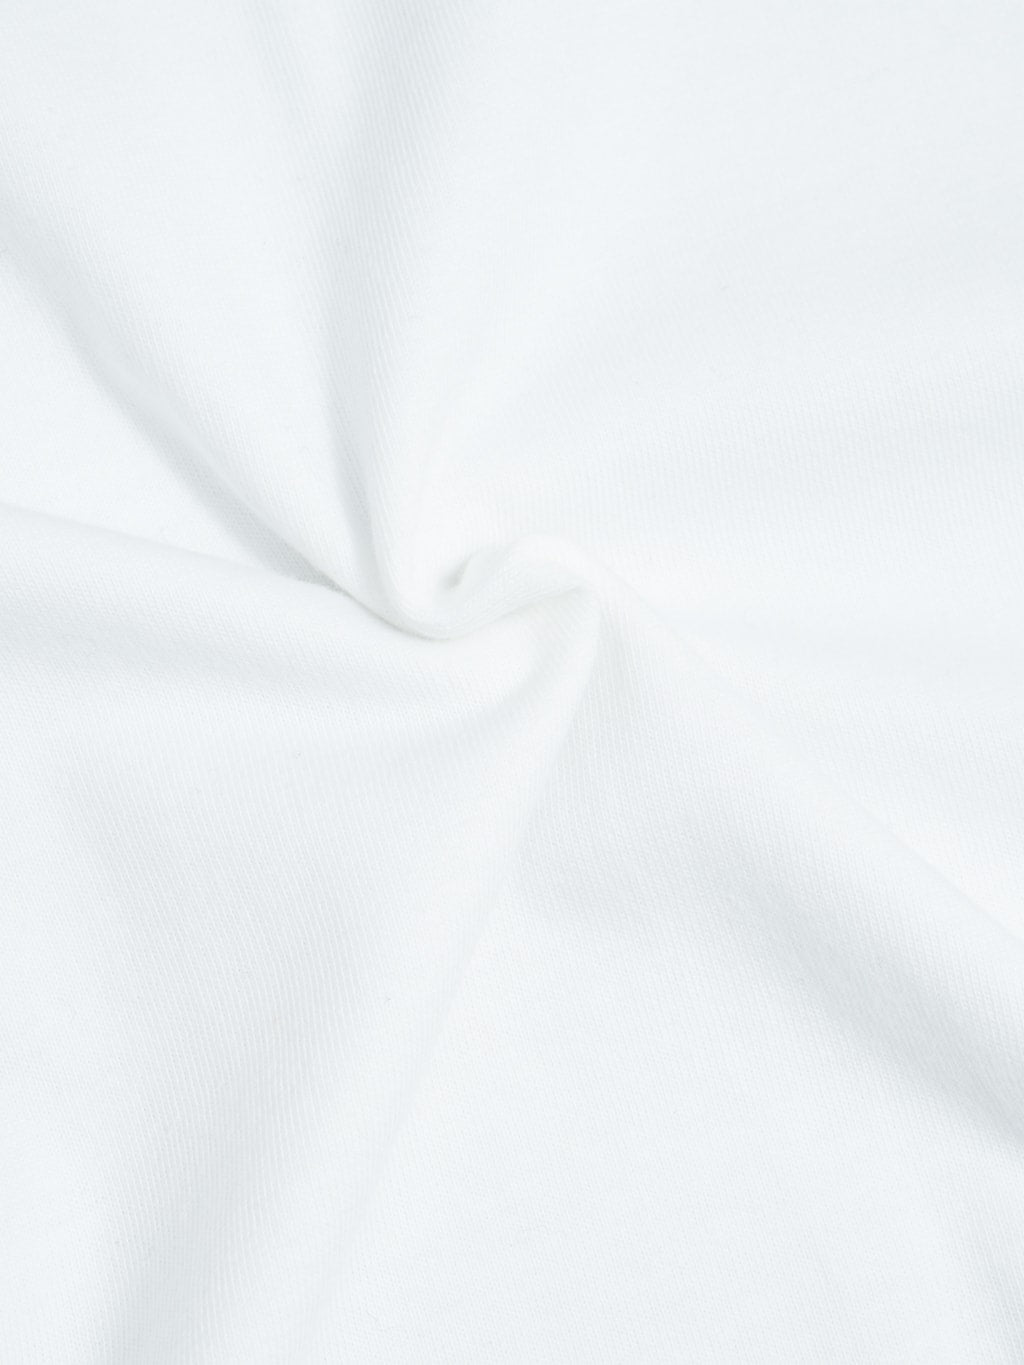 Whitesville Tubular T-Shirt White (2 Pack)